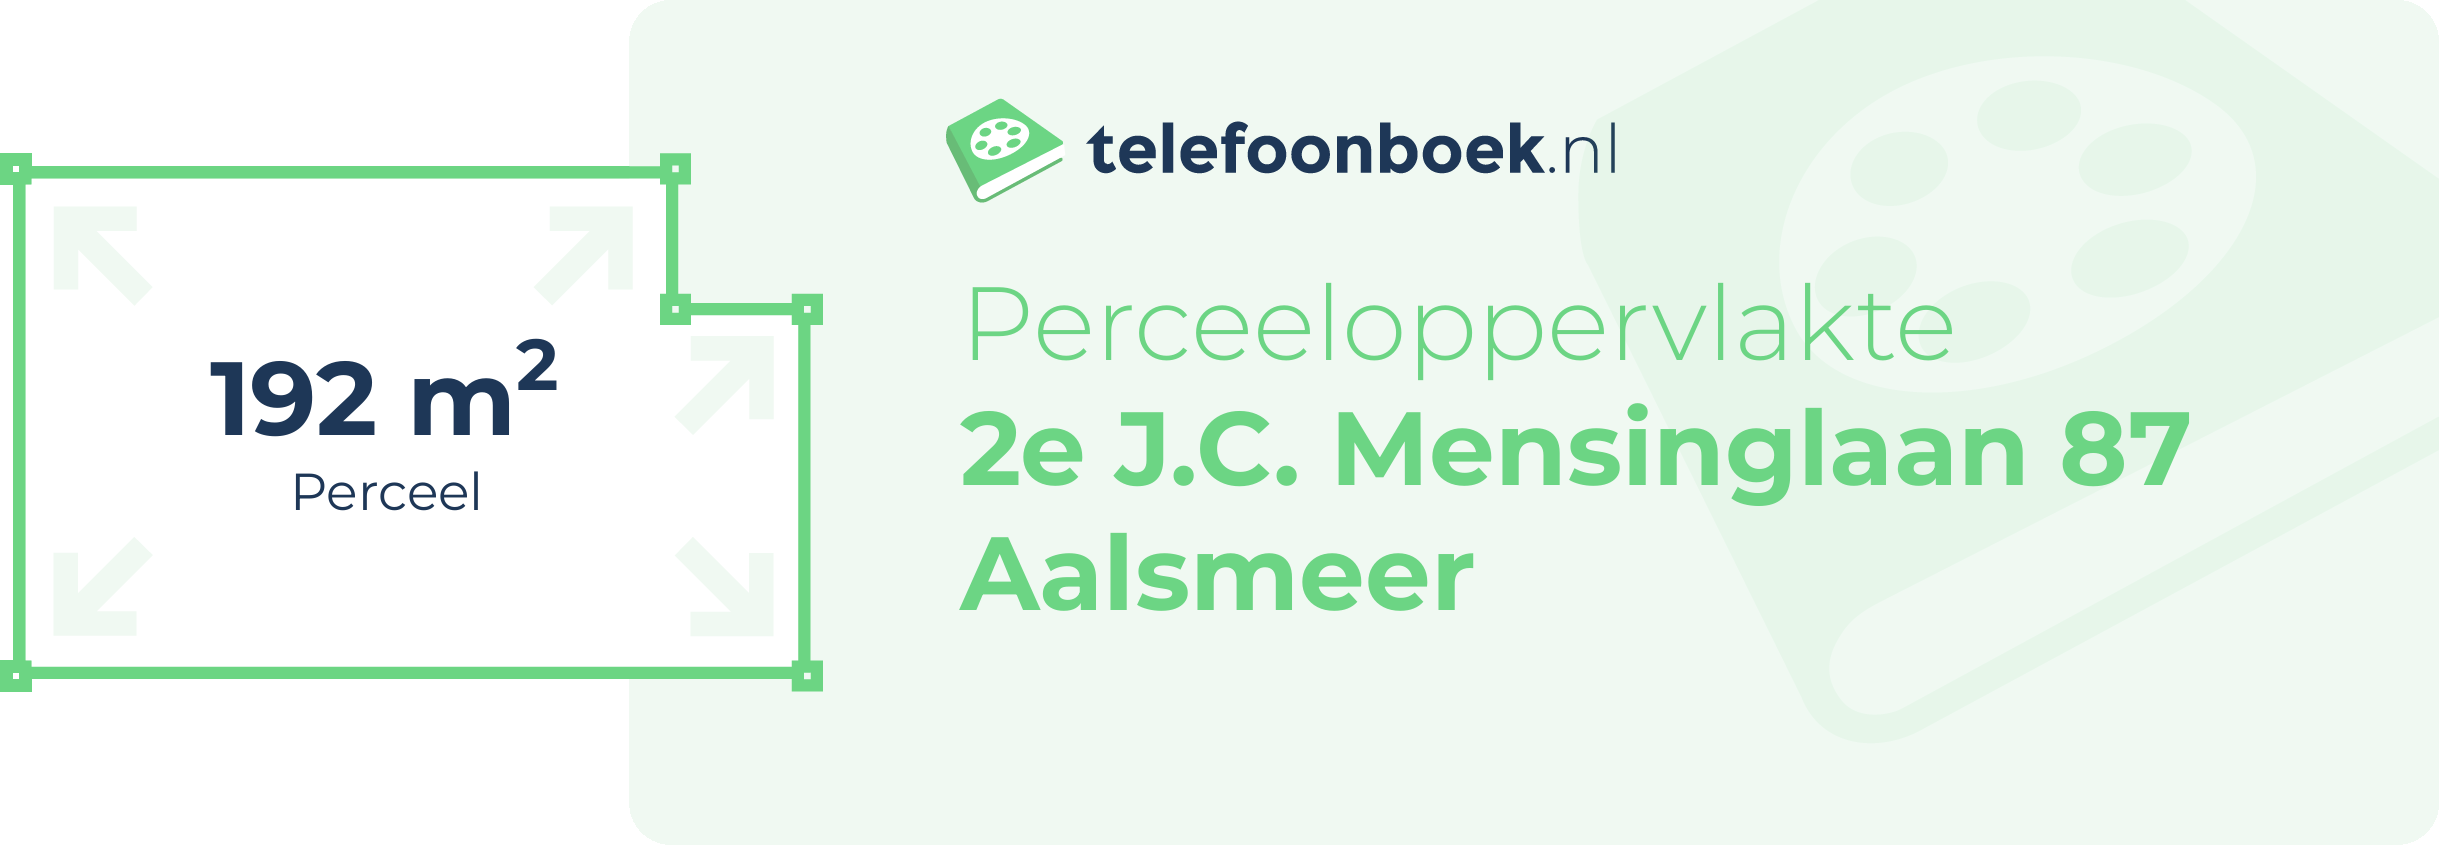 Perceeloppervlakte 2e J.C. Mensinglaan 87 Aalsmeer